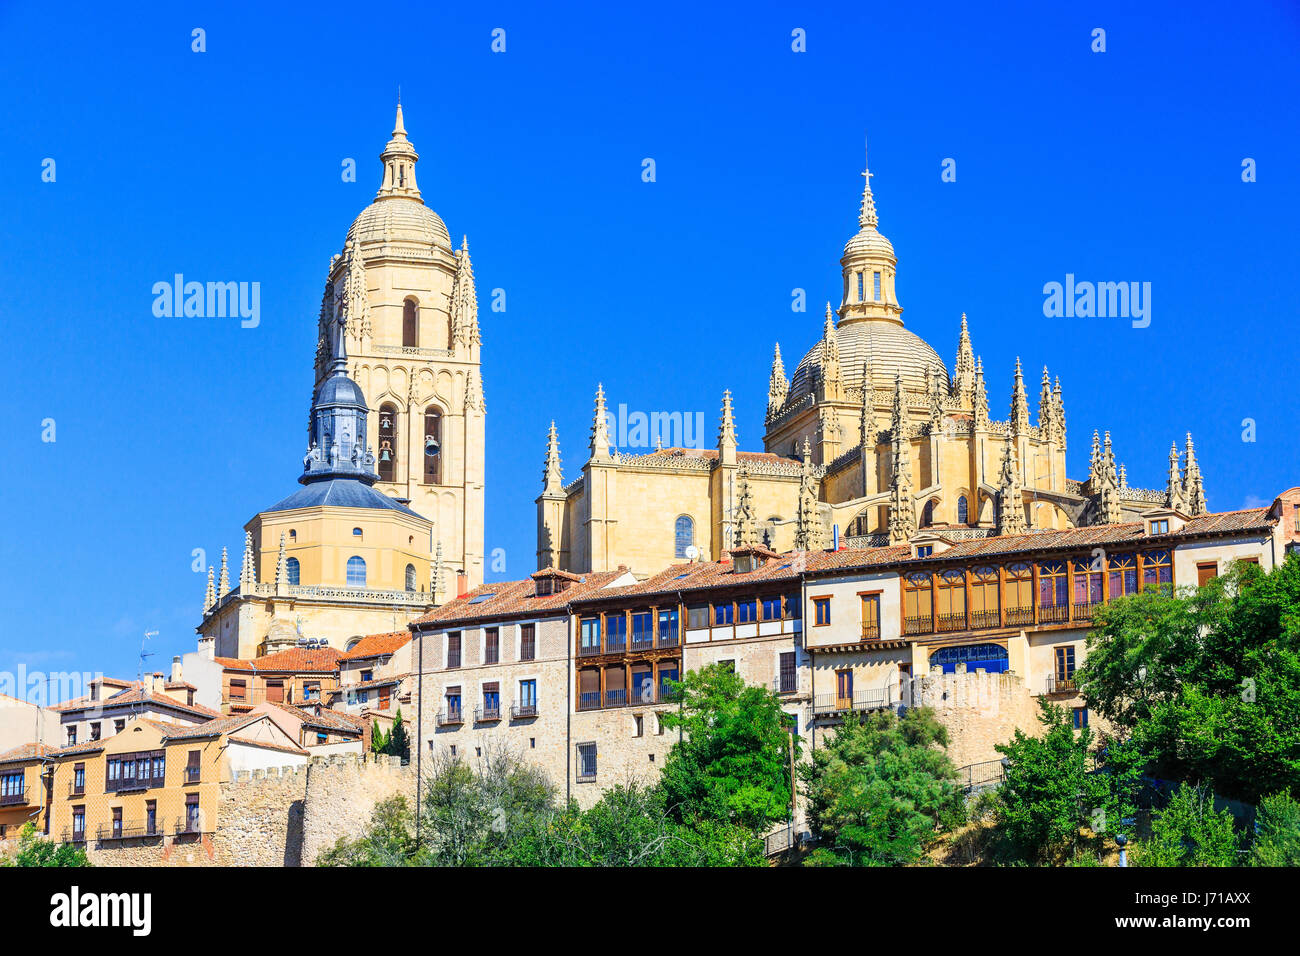 Cathédrale de Santa Maria de Segovia dans le centre historique de la ville de Segovia, Castilla y Leon, Espagne. Banque D'Images